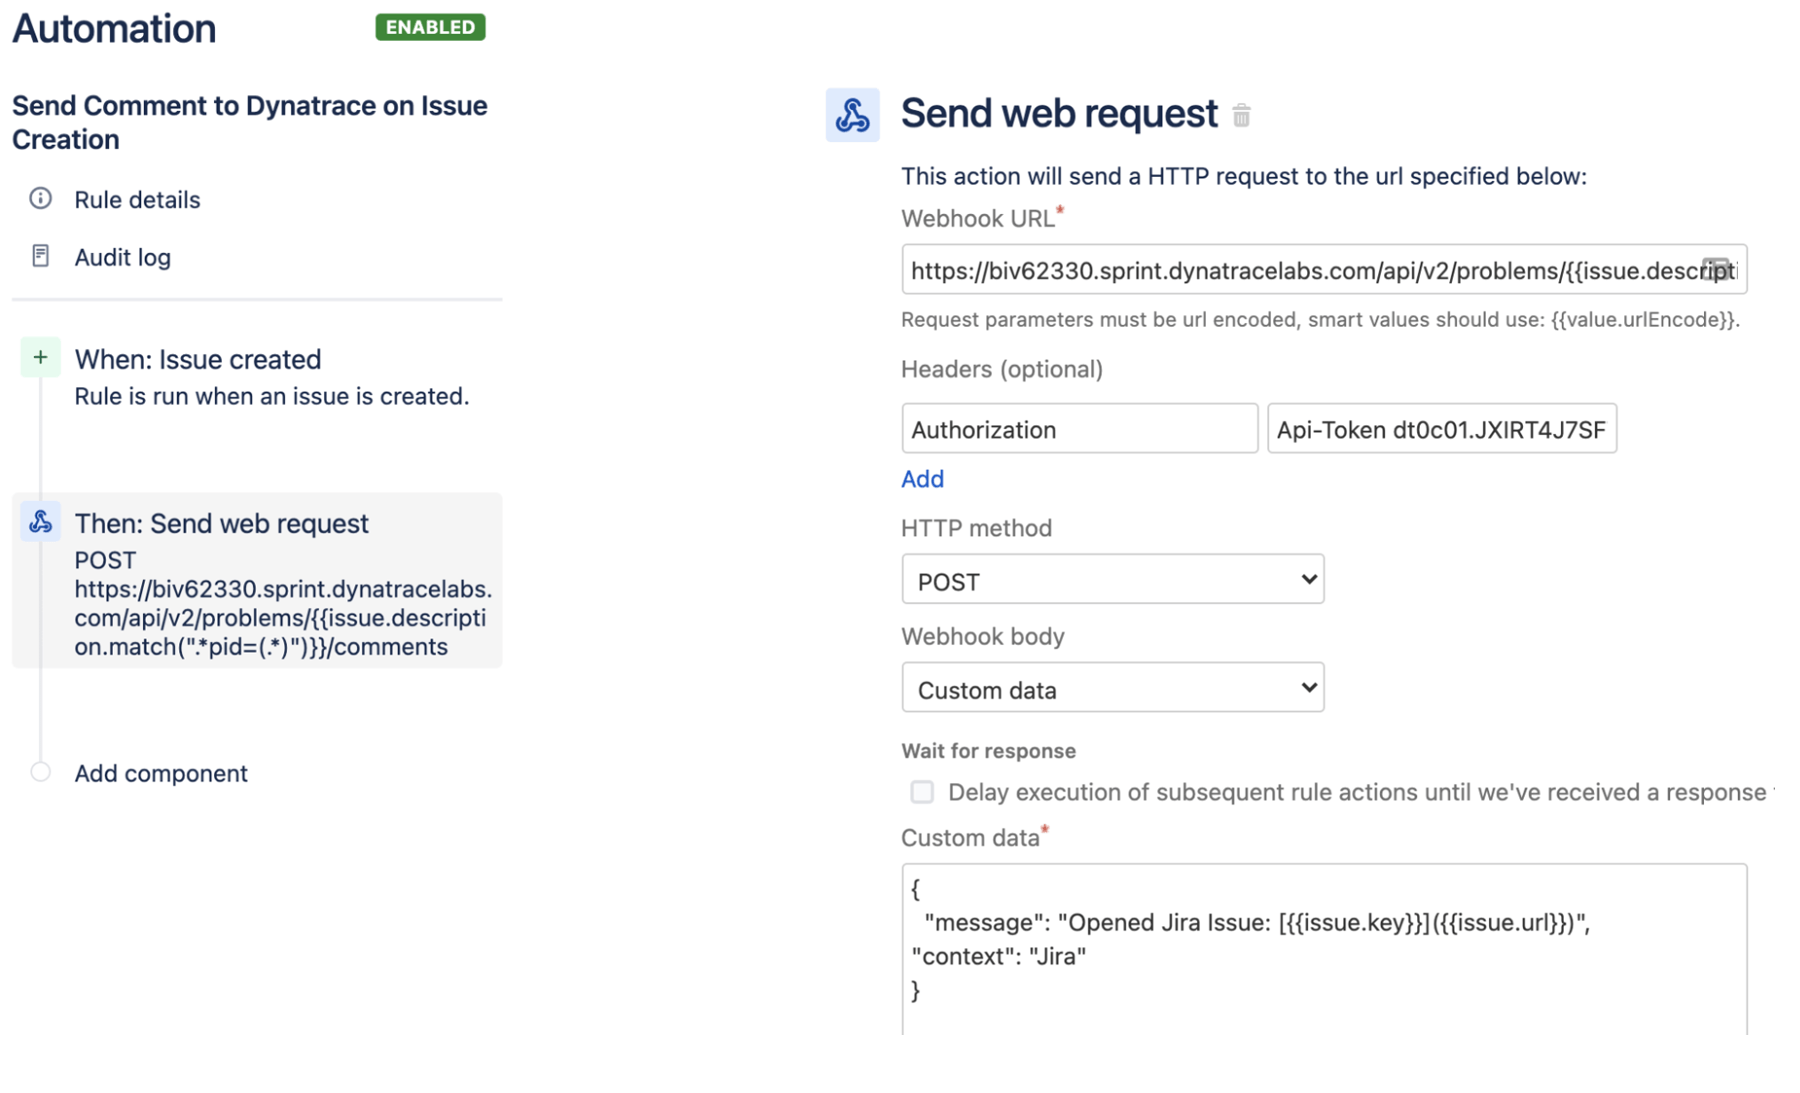 Invia una richiesta Web con commento